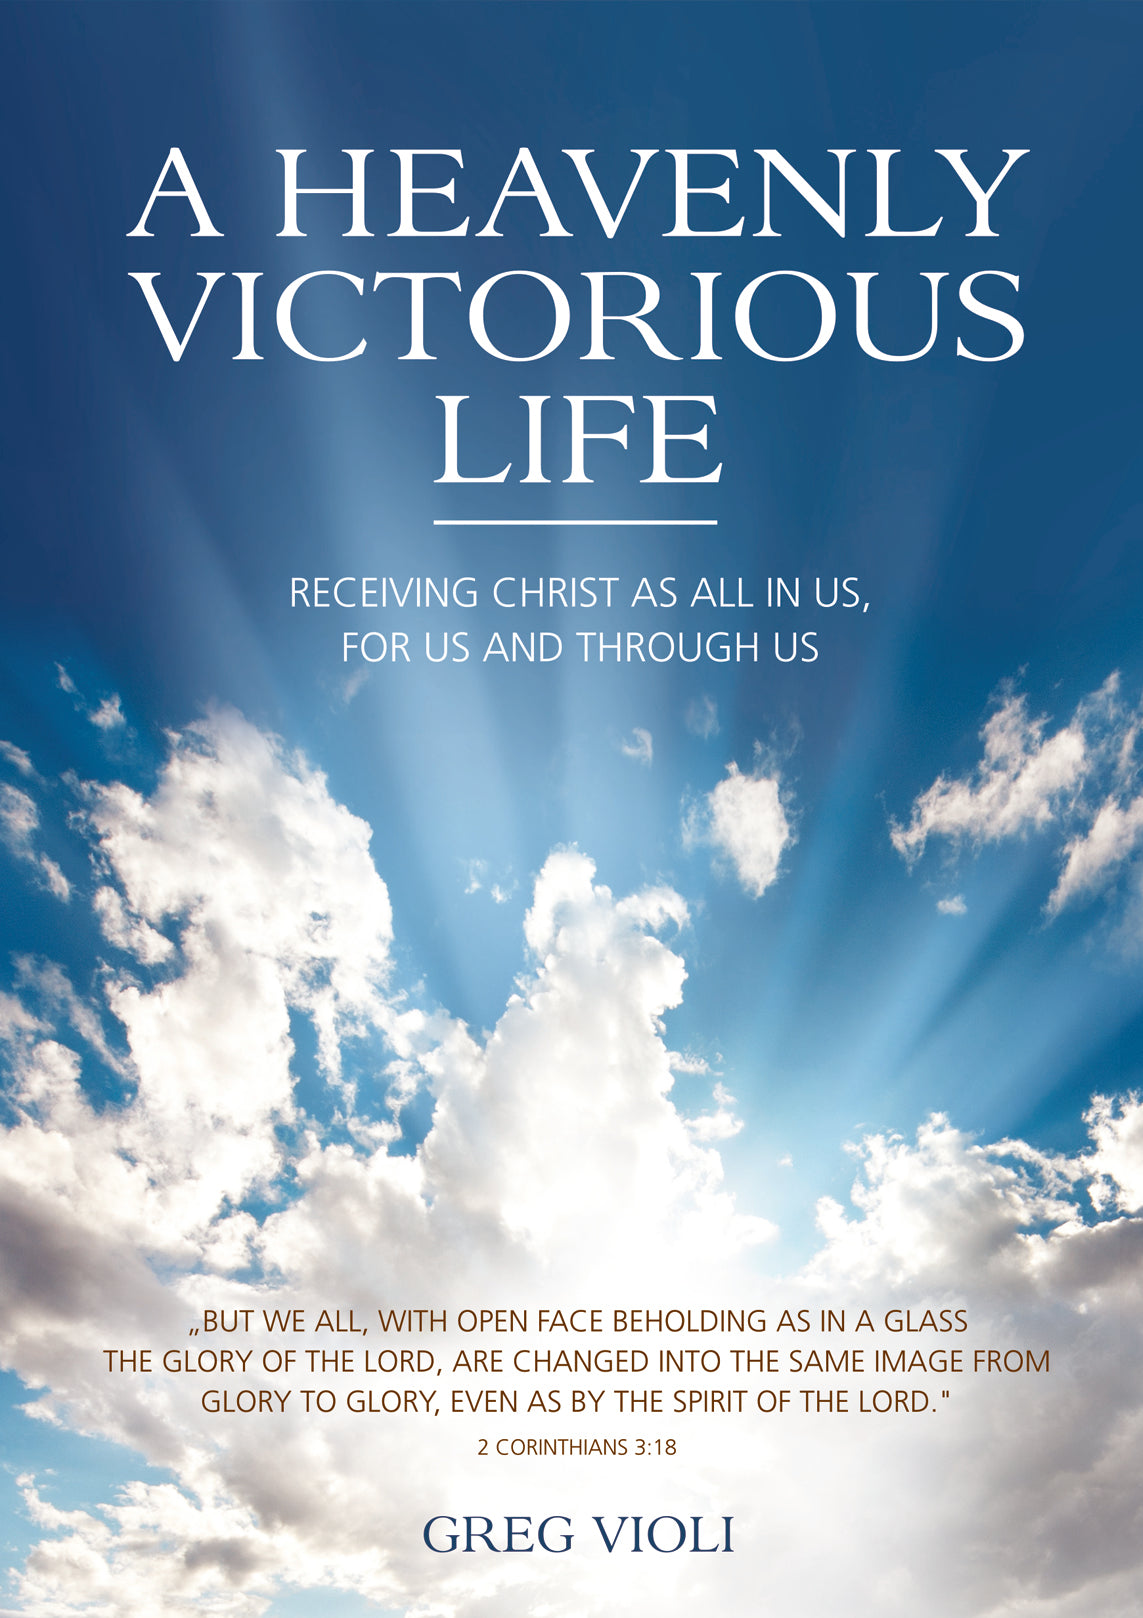 A Heavenly Victorious Life (nur auf Englisch erhältich)